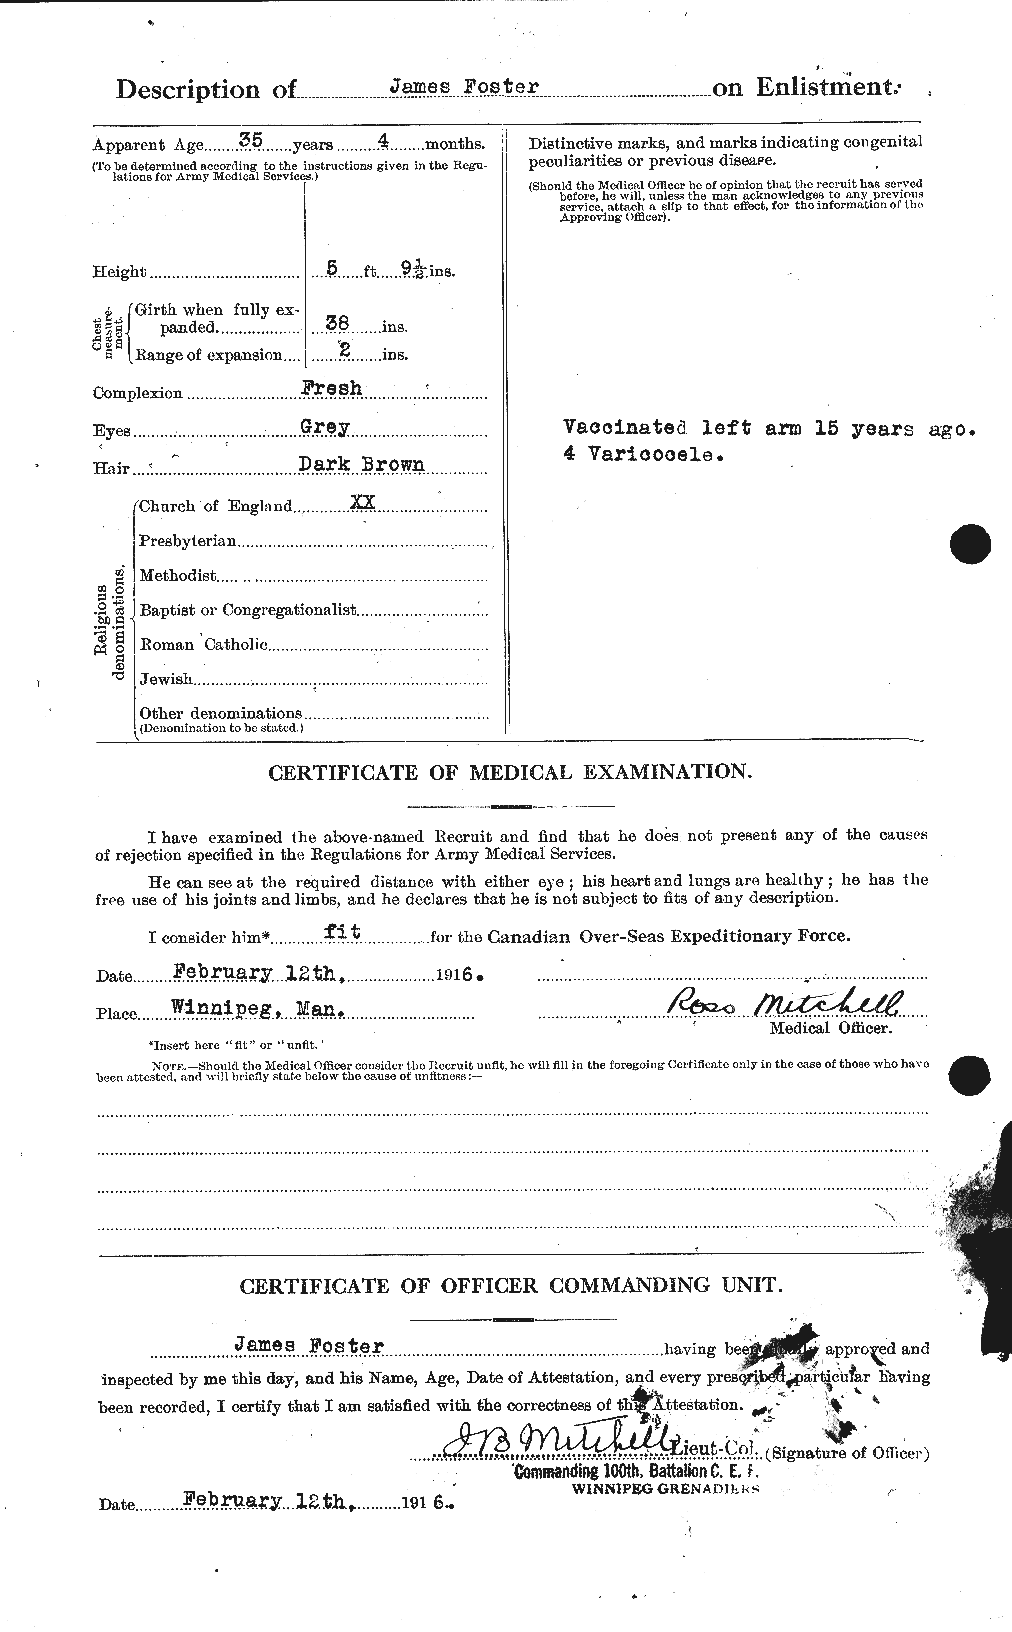 Dossiers du Personnel de la Première Guerre mondiale - CEC 333280b